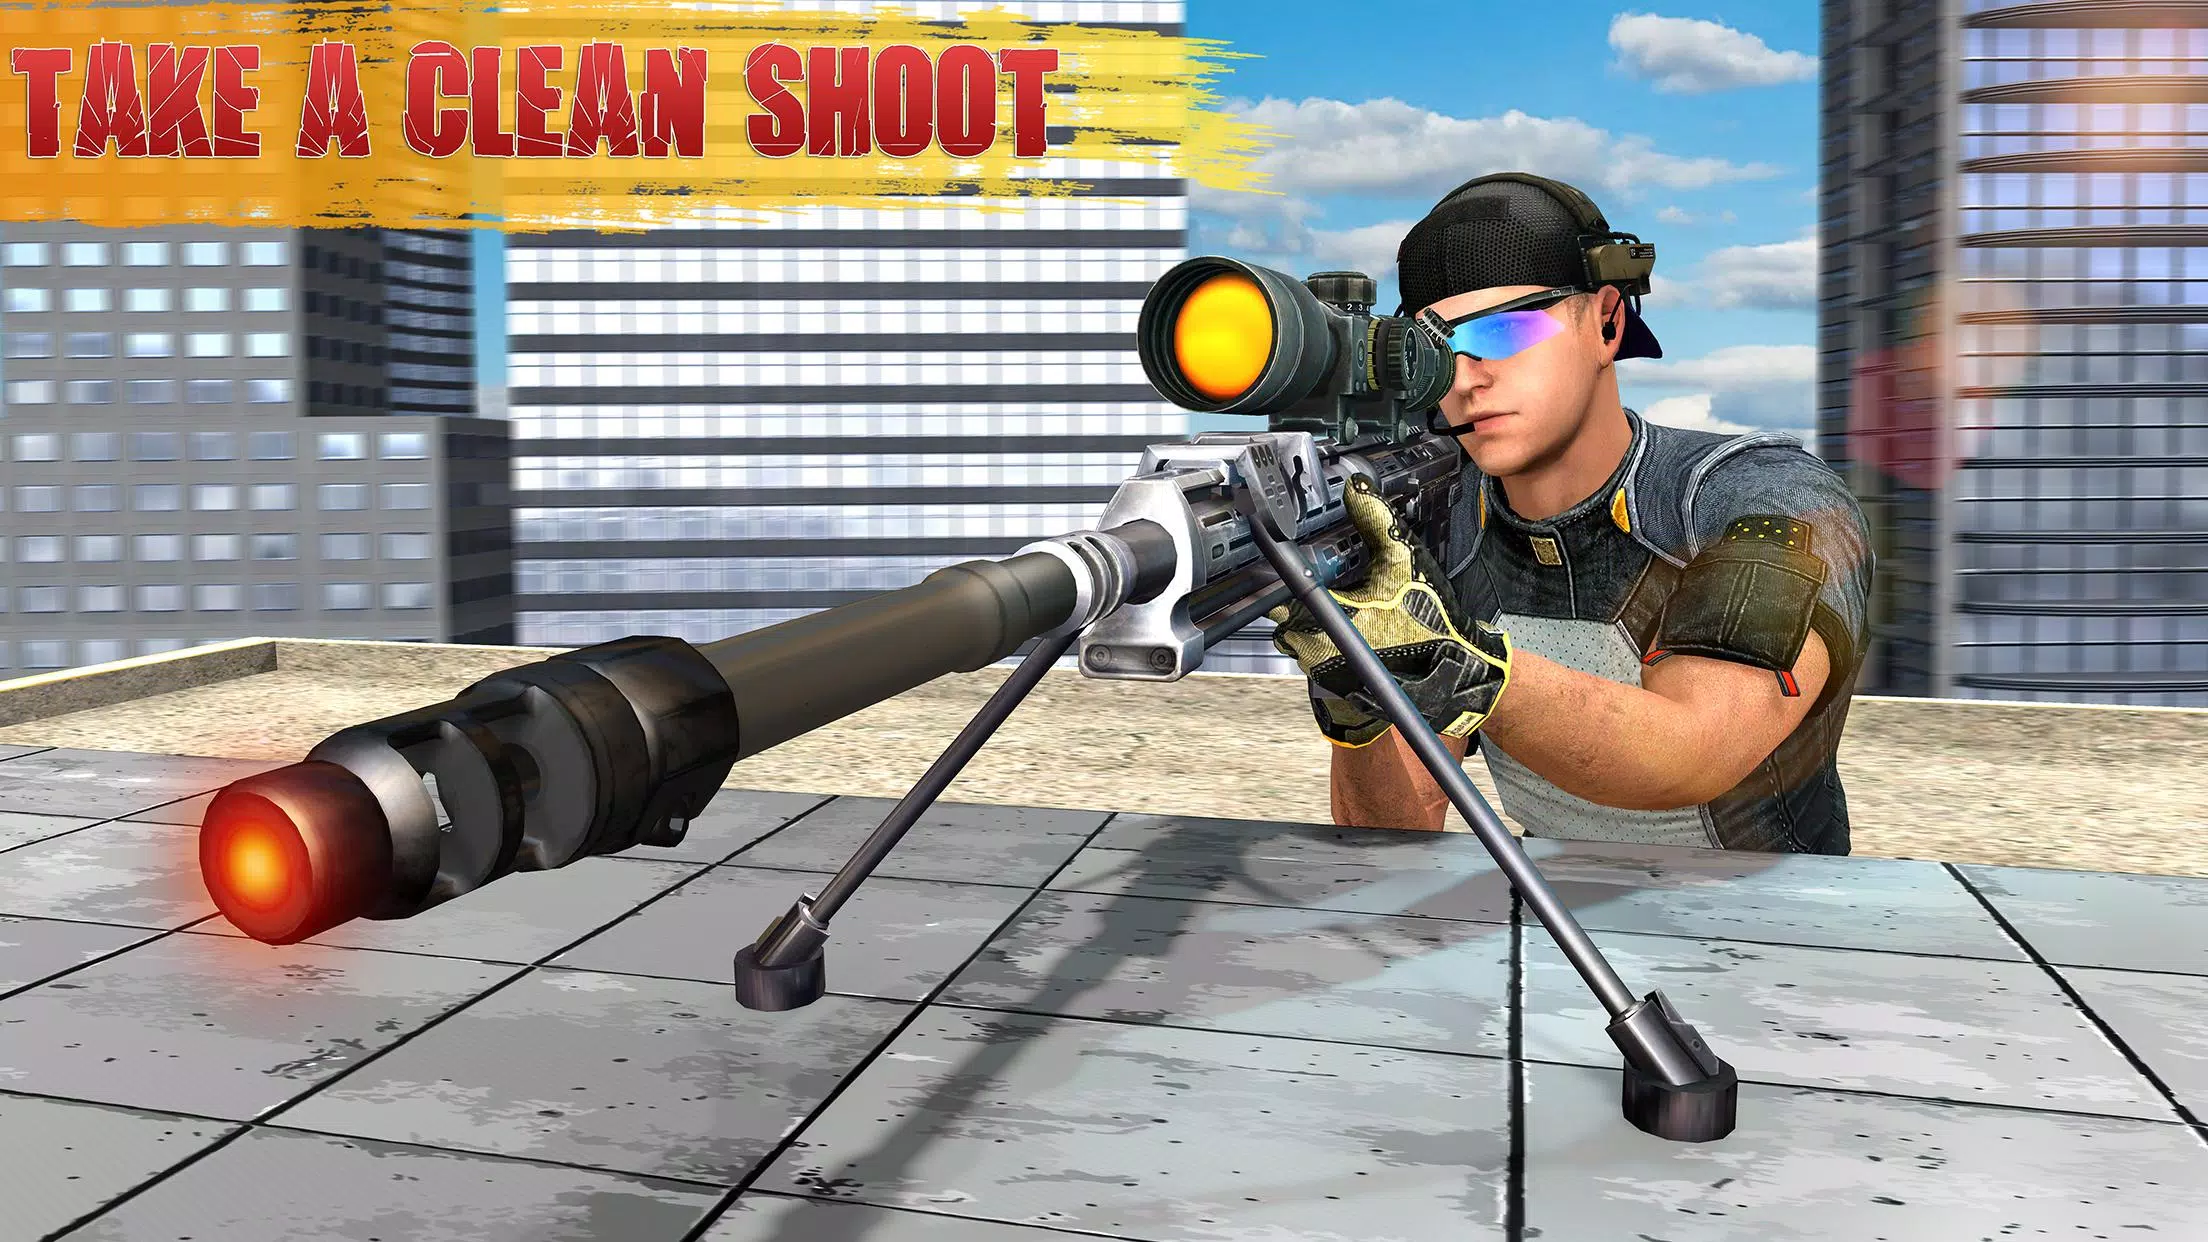 Baixe Sniper 3D：Jogos de tiro no PC